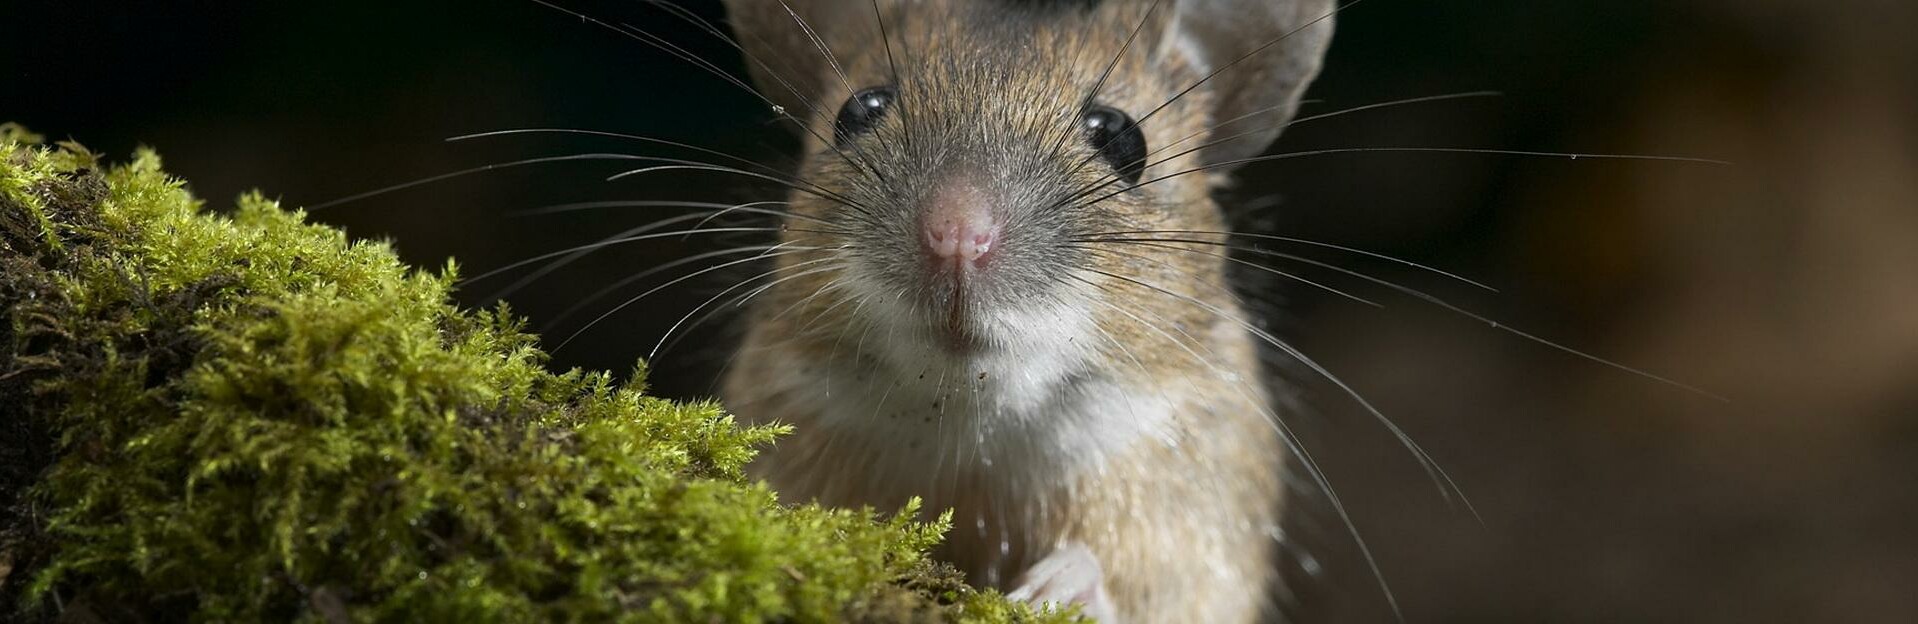 Туляремия мыши. Мышка с усиками. Мышь с усами.